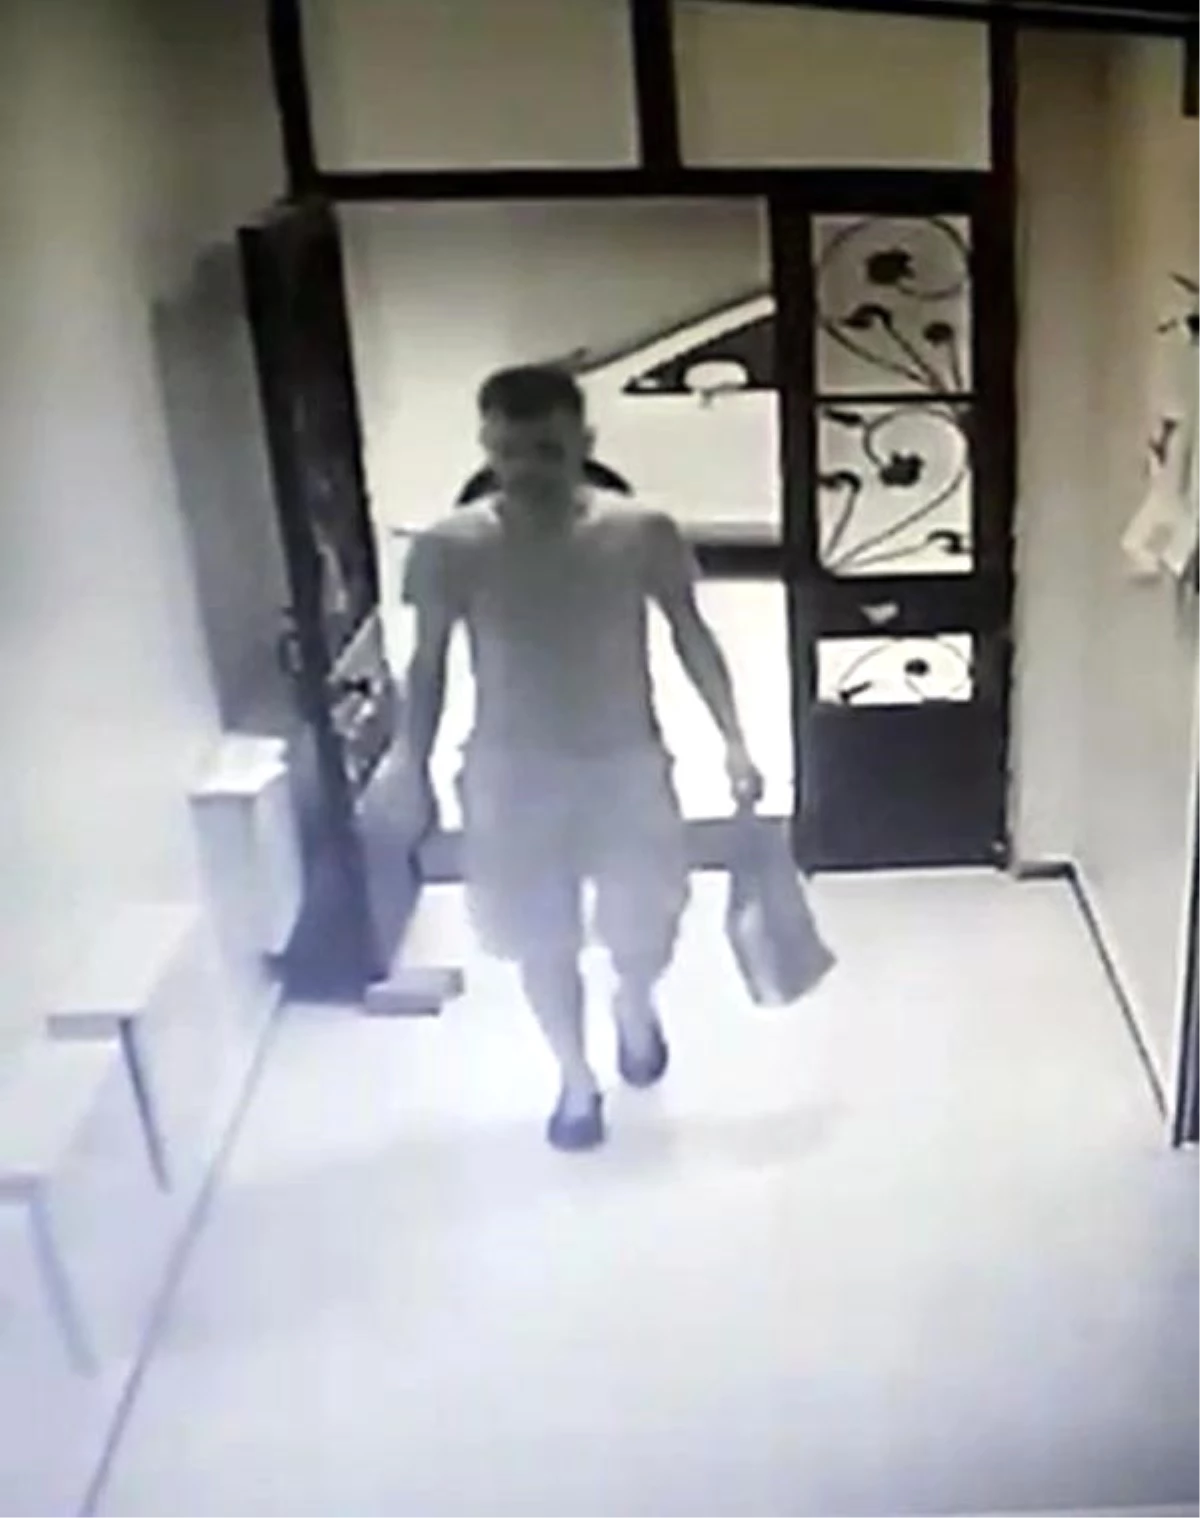 Kiralık Otomobille Ayakkabı Çalan Hırsız Güvenlik Kamerasına Yakalandı